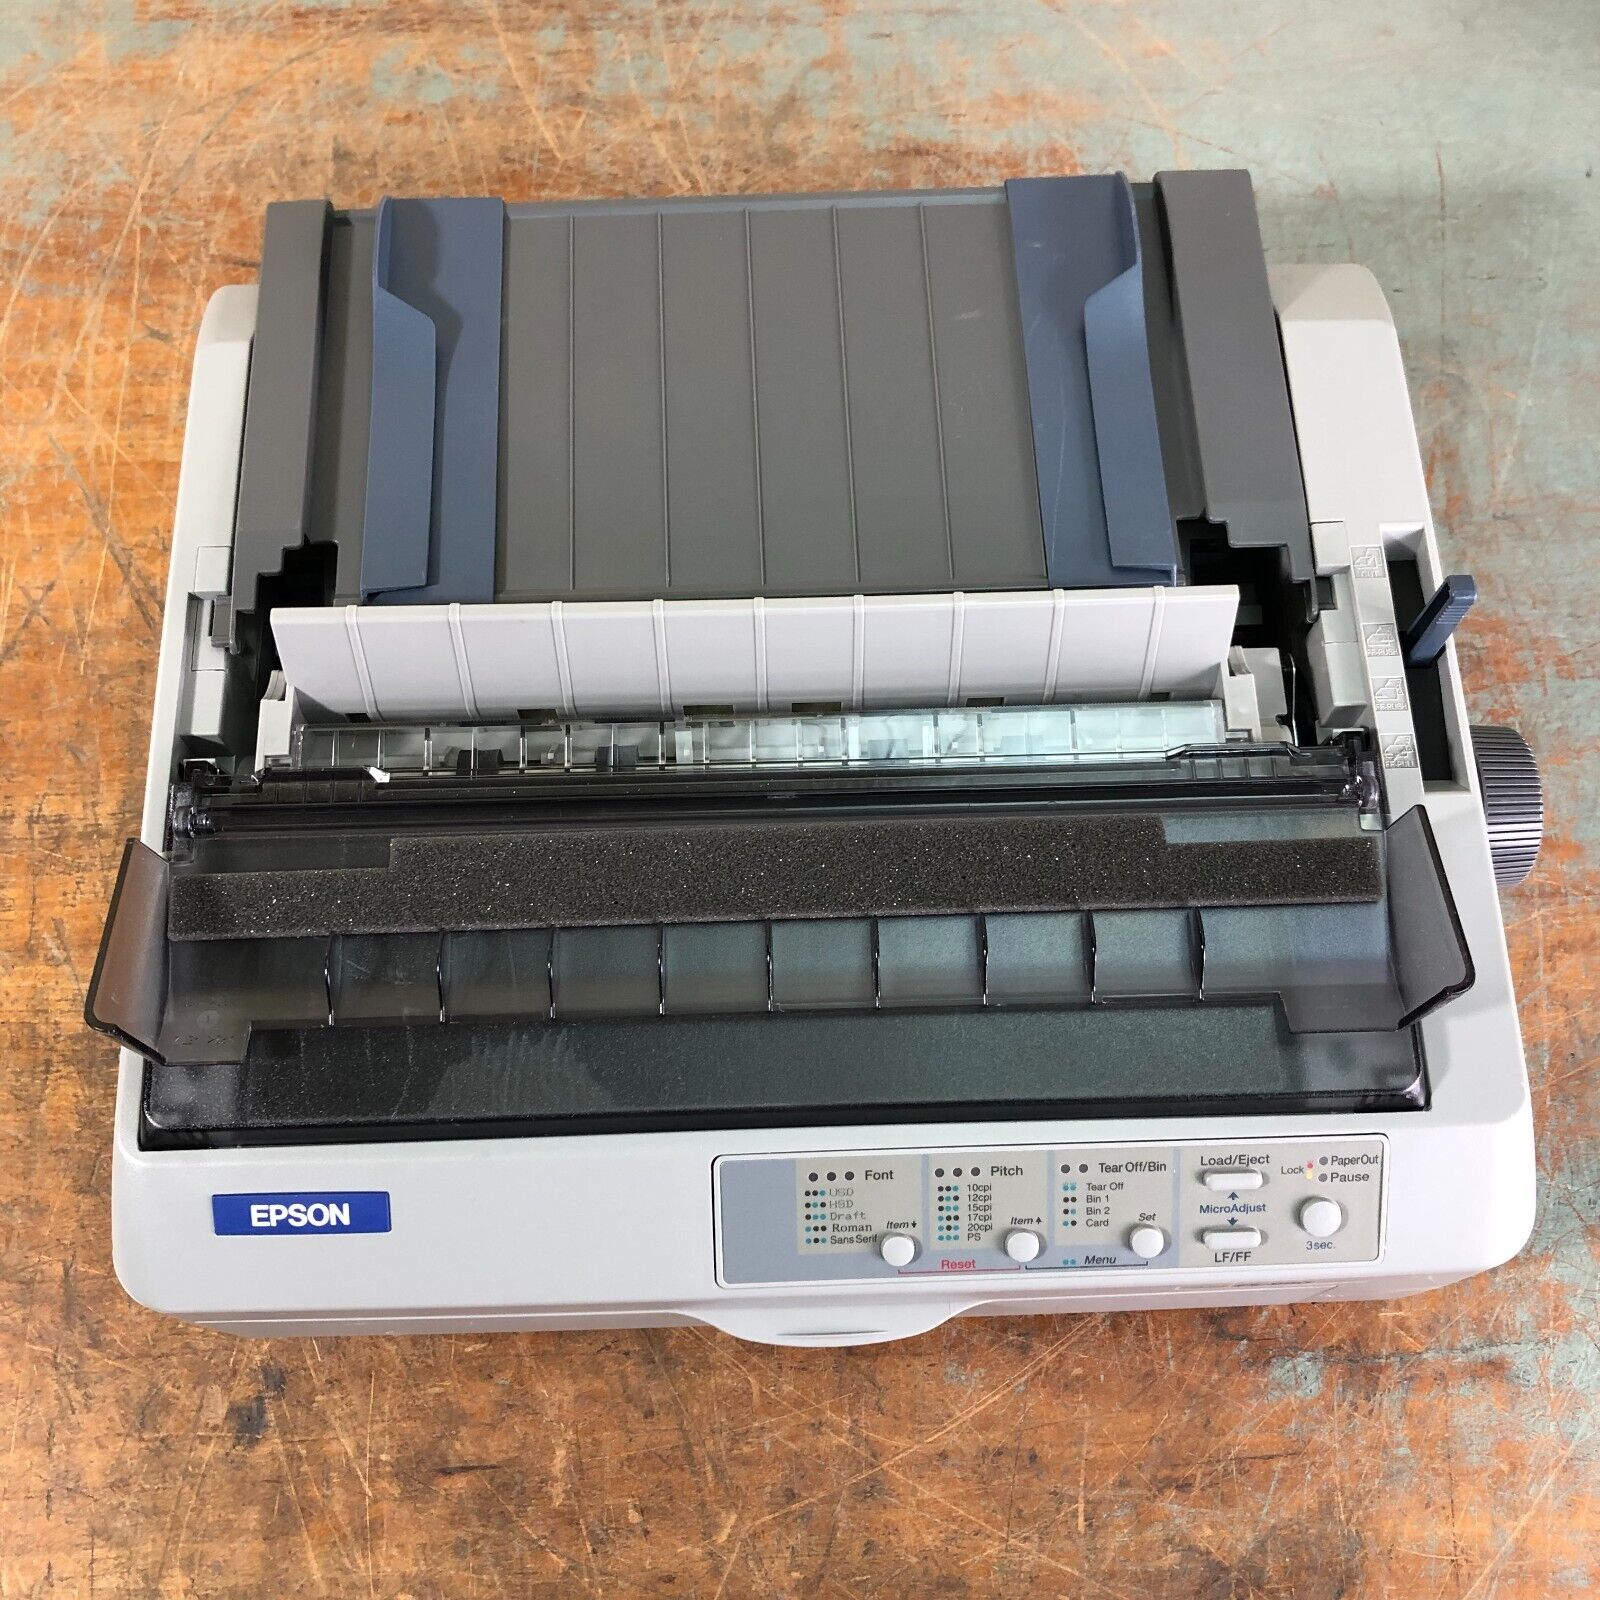 Epson FX-890 9 Pin Impact Printer - WORKS